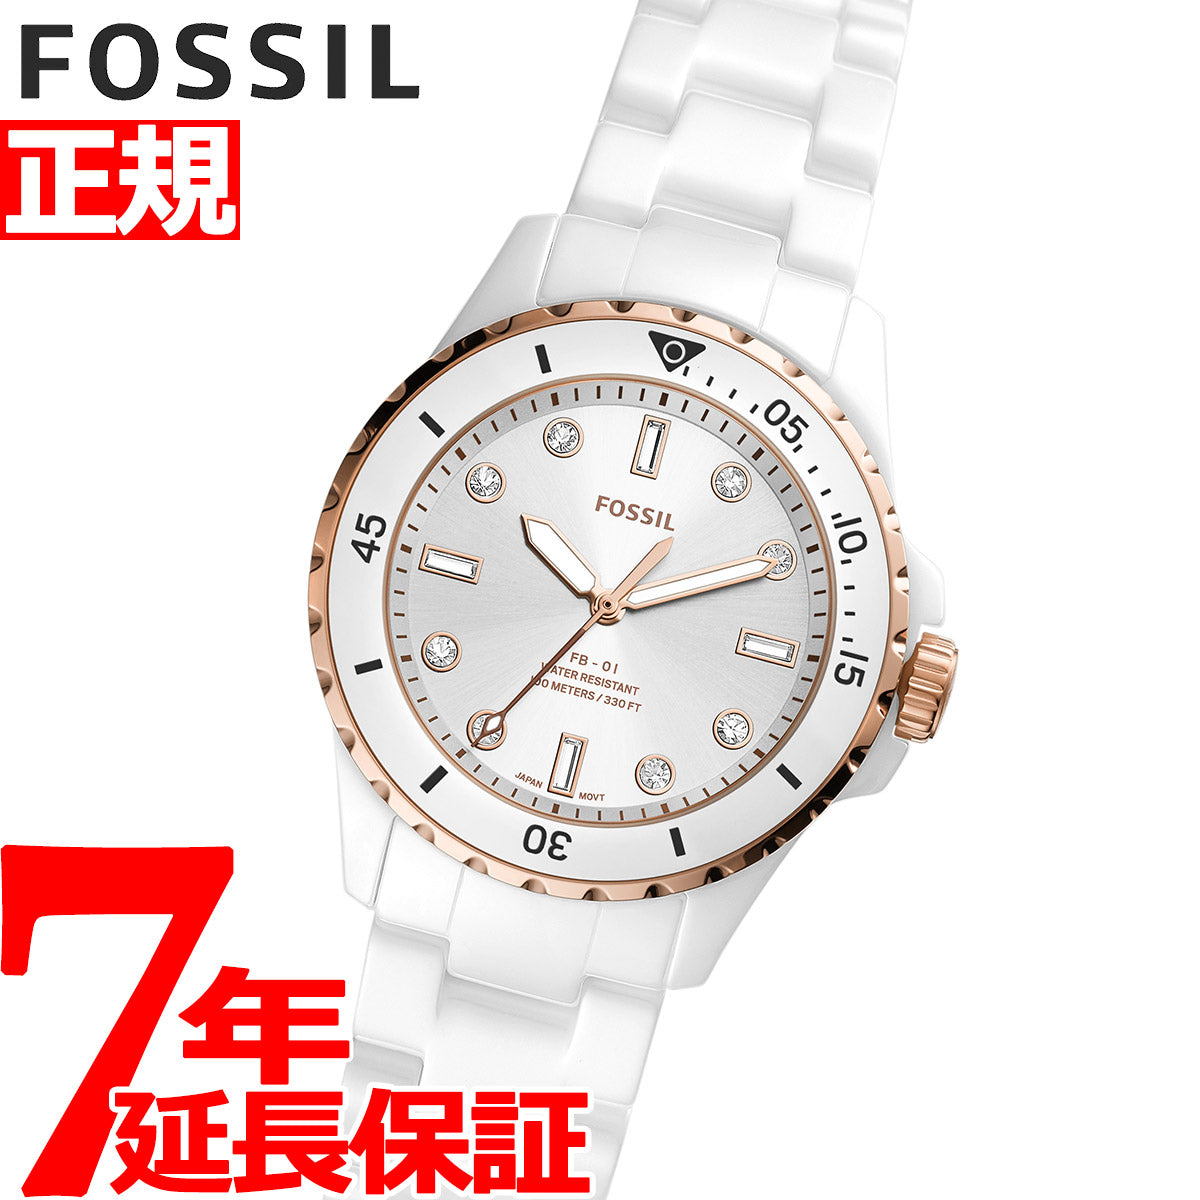 フォッシル FOSSIL 腕時計 レディース FB-01 CE1107